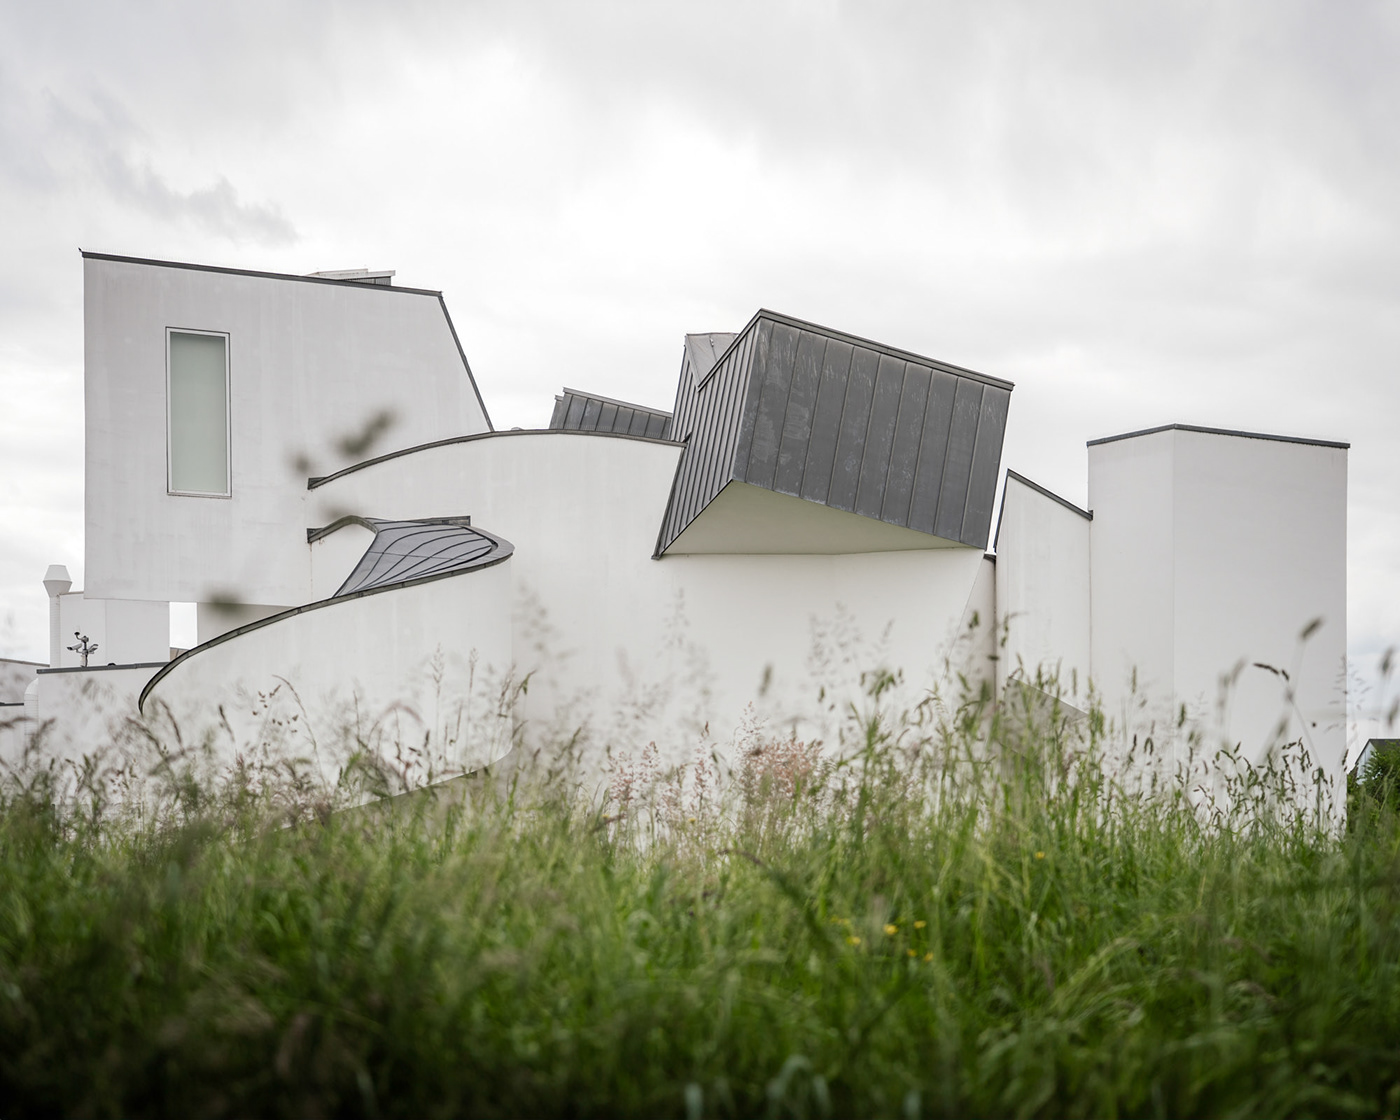 Vitra ZAHA HADID Herzog & de Meuron Frank Gehry Tadao Ando Alvaro Siza germany Architecture Photography vitra campus weilamrhein